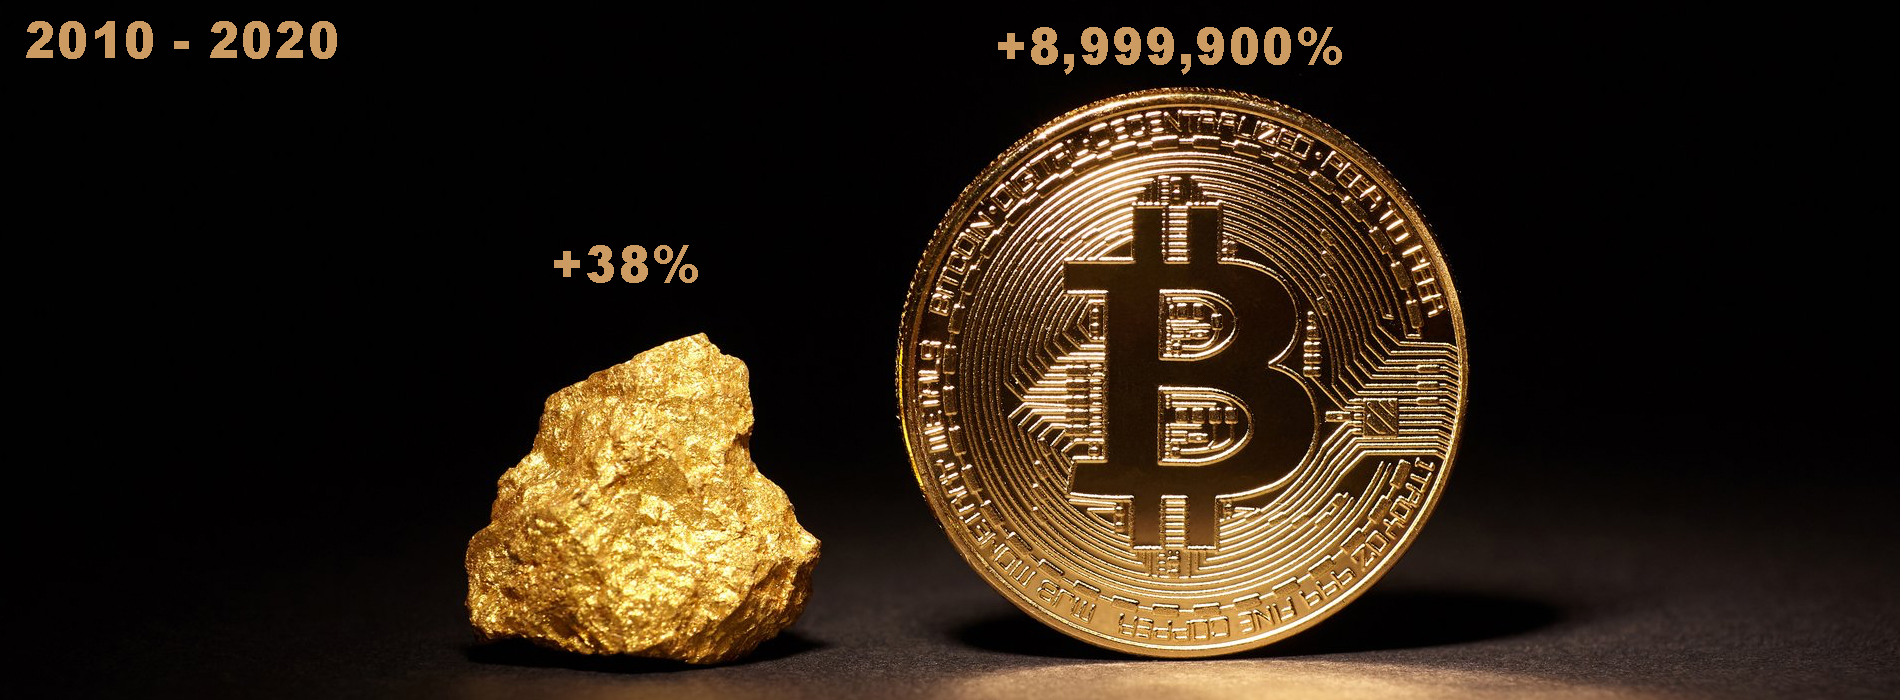 bitcoin herstelt weer richting 1.800 dollar